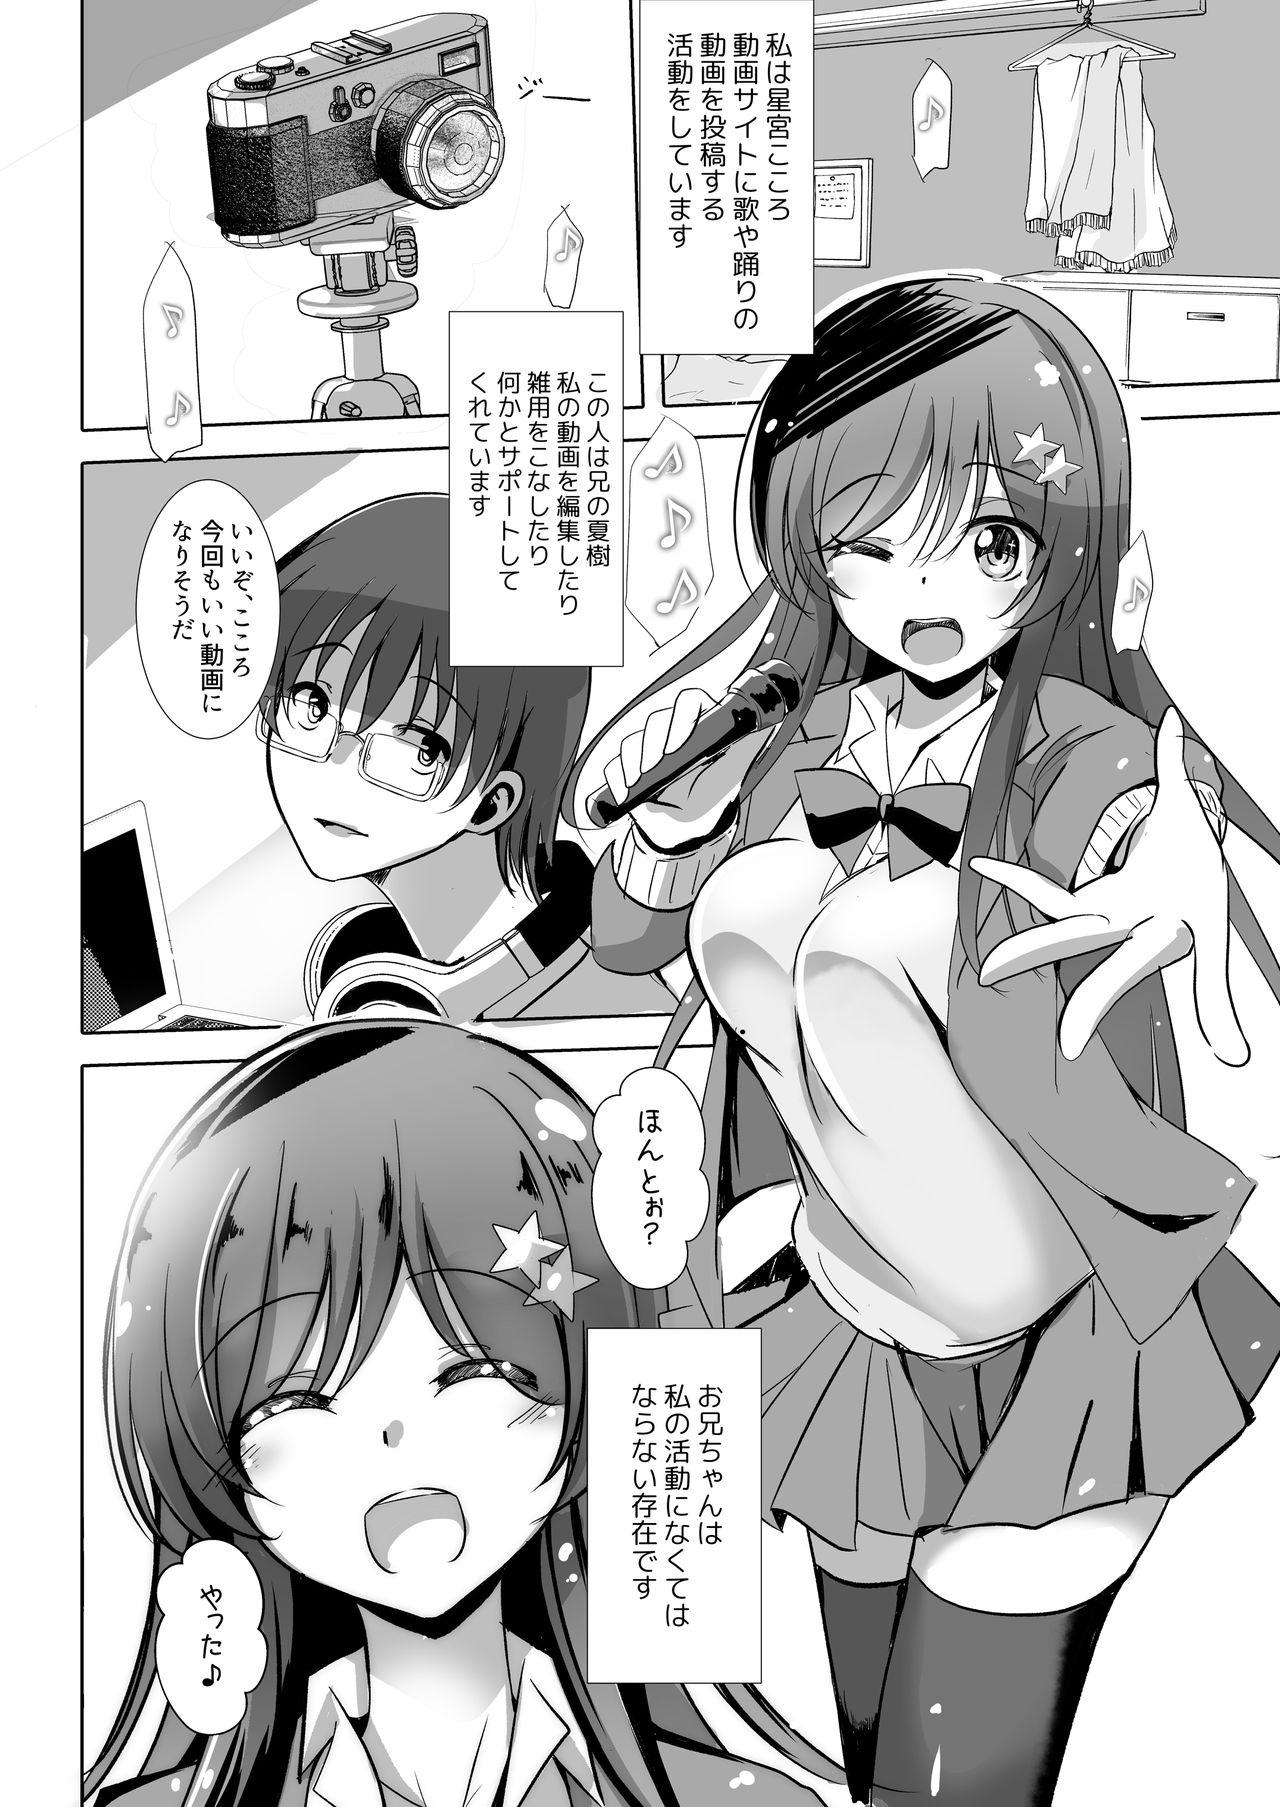 Sis Onii-chan no Shiranai Watashi no Seidorei Nikki - Original Atm - Page 4